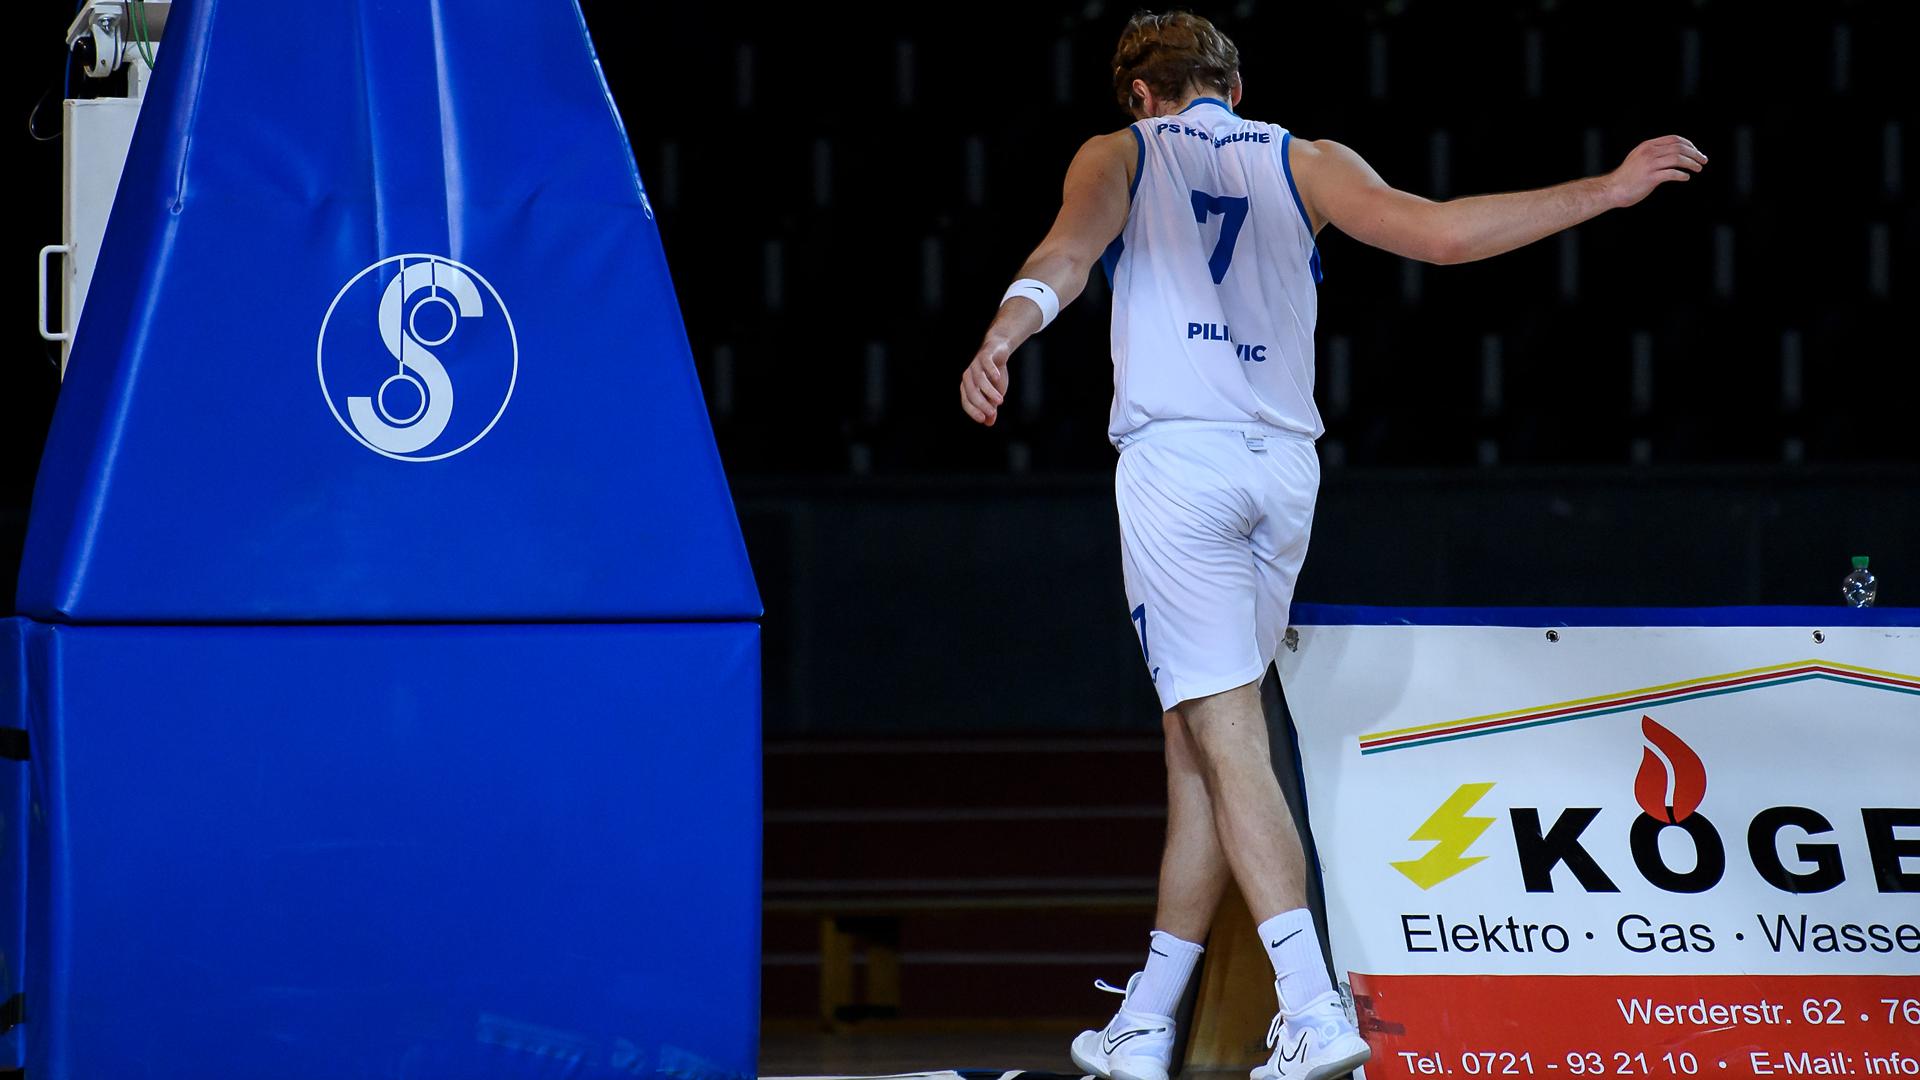 Antonio Pilipovic (Lions) muss wegen einer Verletzung das Parkett verlassen.

GES/ Basketball/ ProA: PSK Lions - Team Ehingen Urspring, 23.01.2021 --

